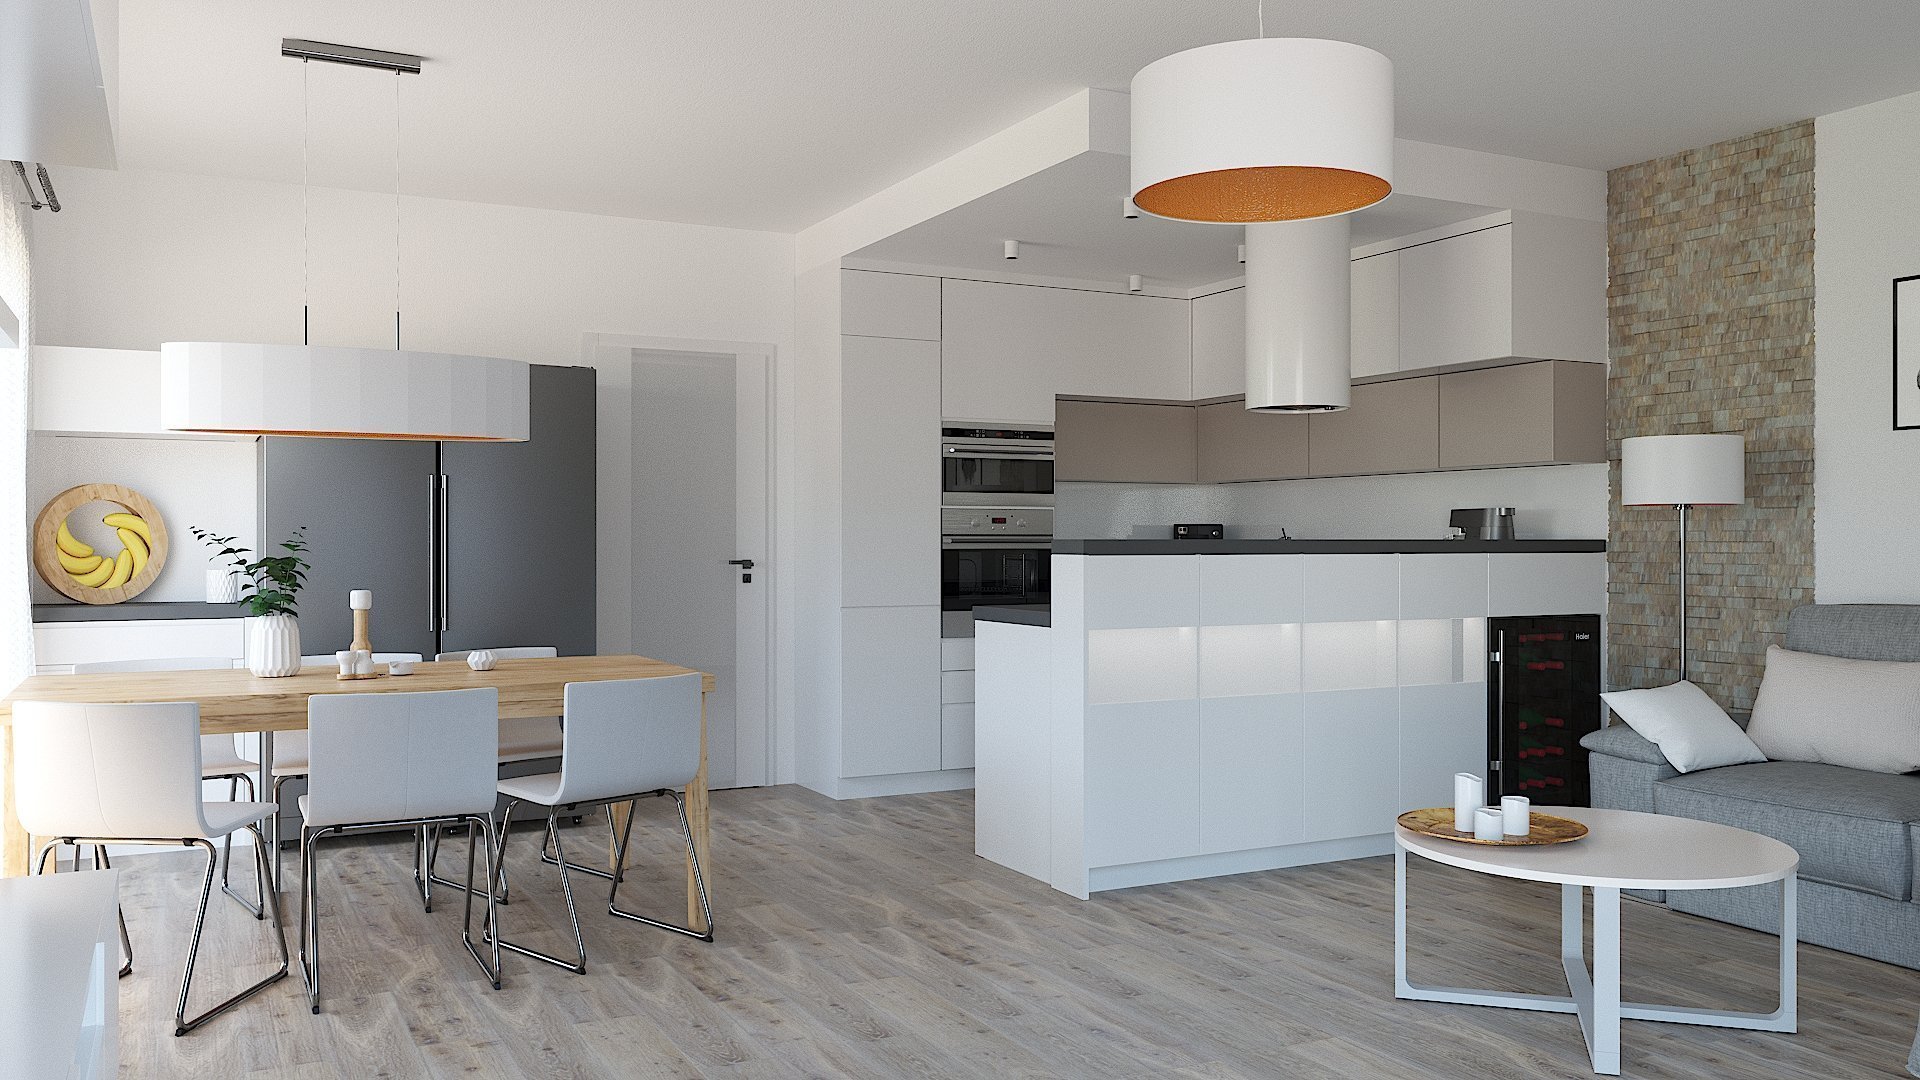 Návrh a vizualizace obývacího pokoje s kuchyňským koutem a jídelnou. Požadavek na čisté moderní pojetí s teplejšími barvami a důrazem na atmosférické osvětlení…